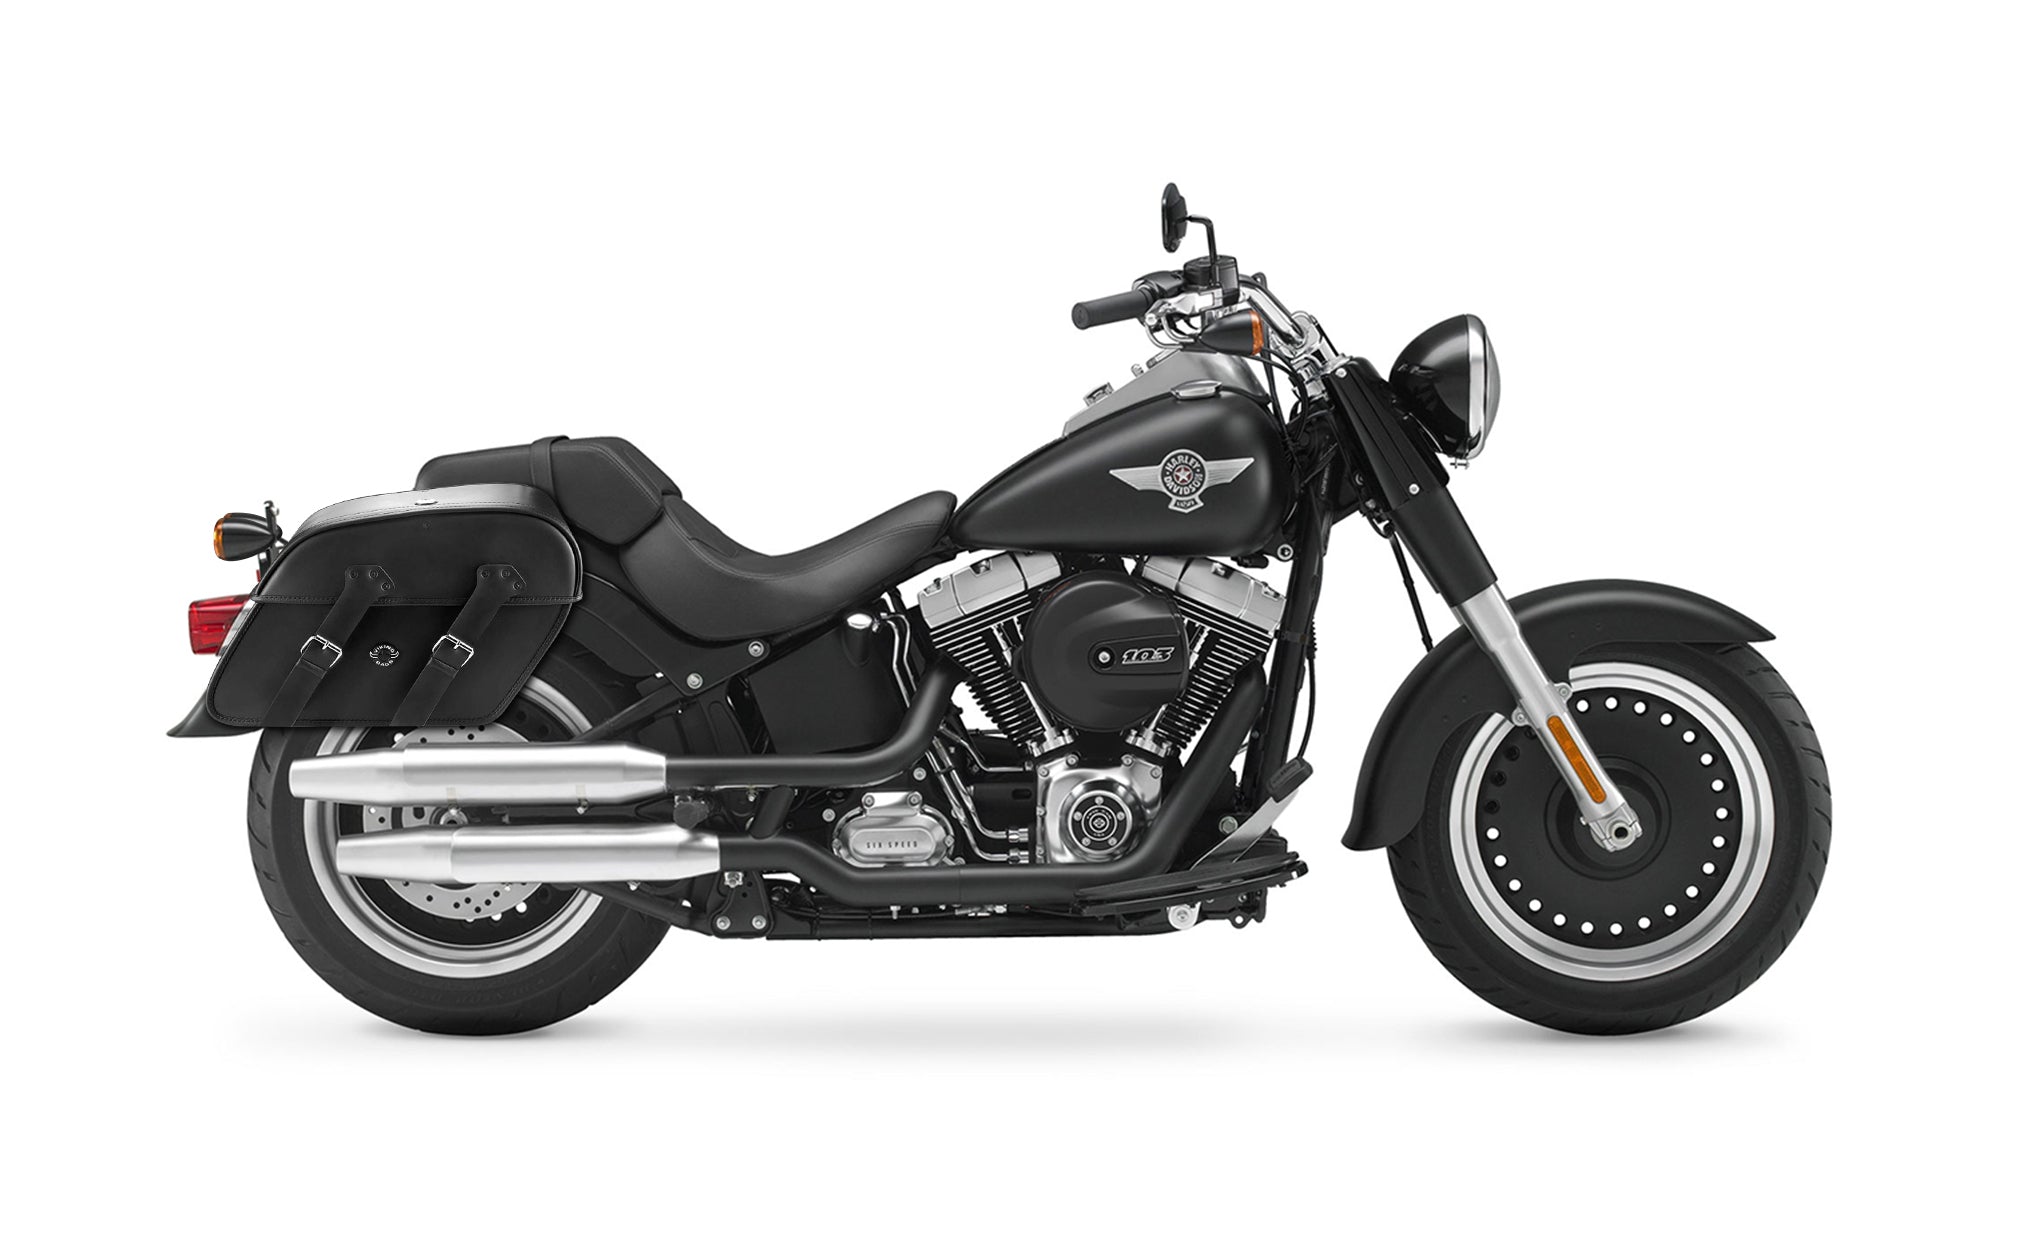 Viking Raven Large Motorcycle Leather Saddlebags For Harley Softail Fat Boy Lo Flstfb on Bike Photo @expand